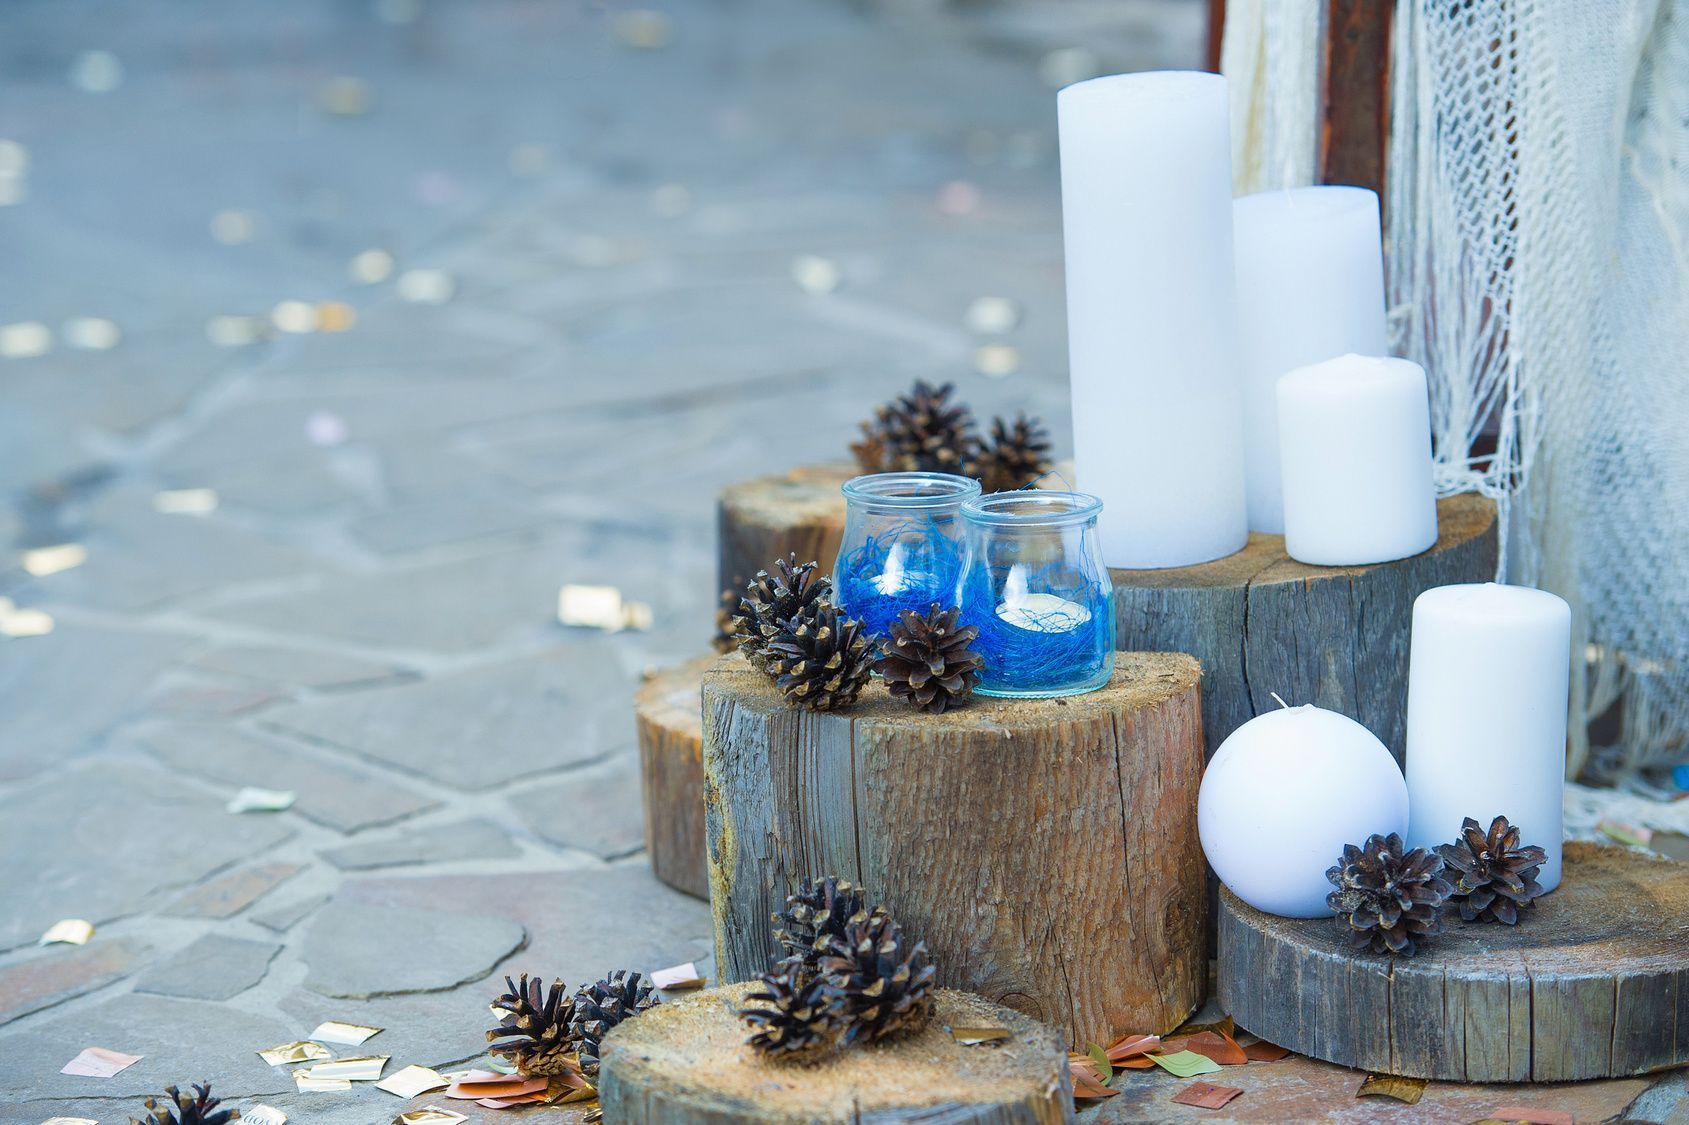 Adventsgestecke-Ideen können ruhig etwas ausgefallen sein. Besonders natürlich wirken Kerzen auf einem Baumstamm.